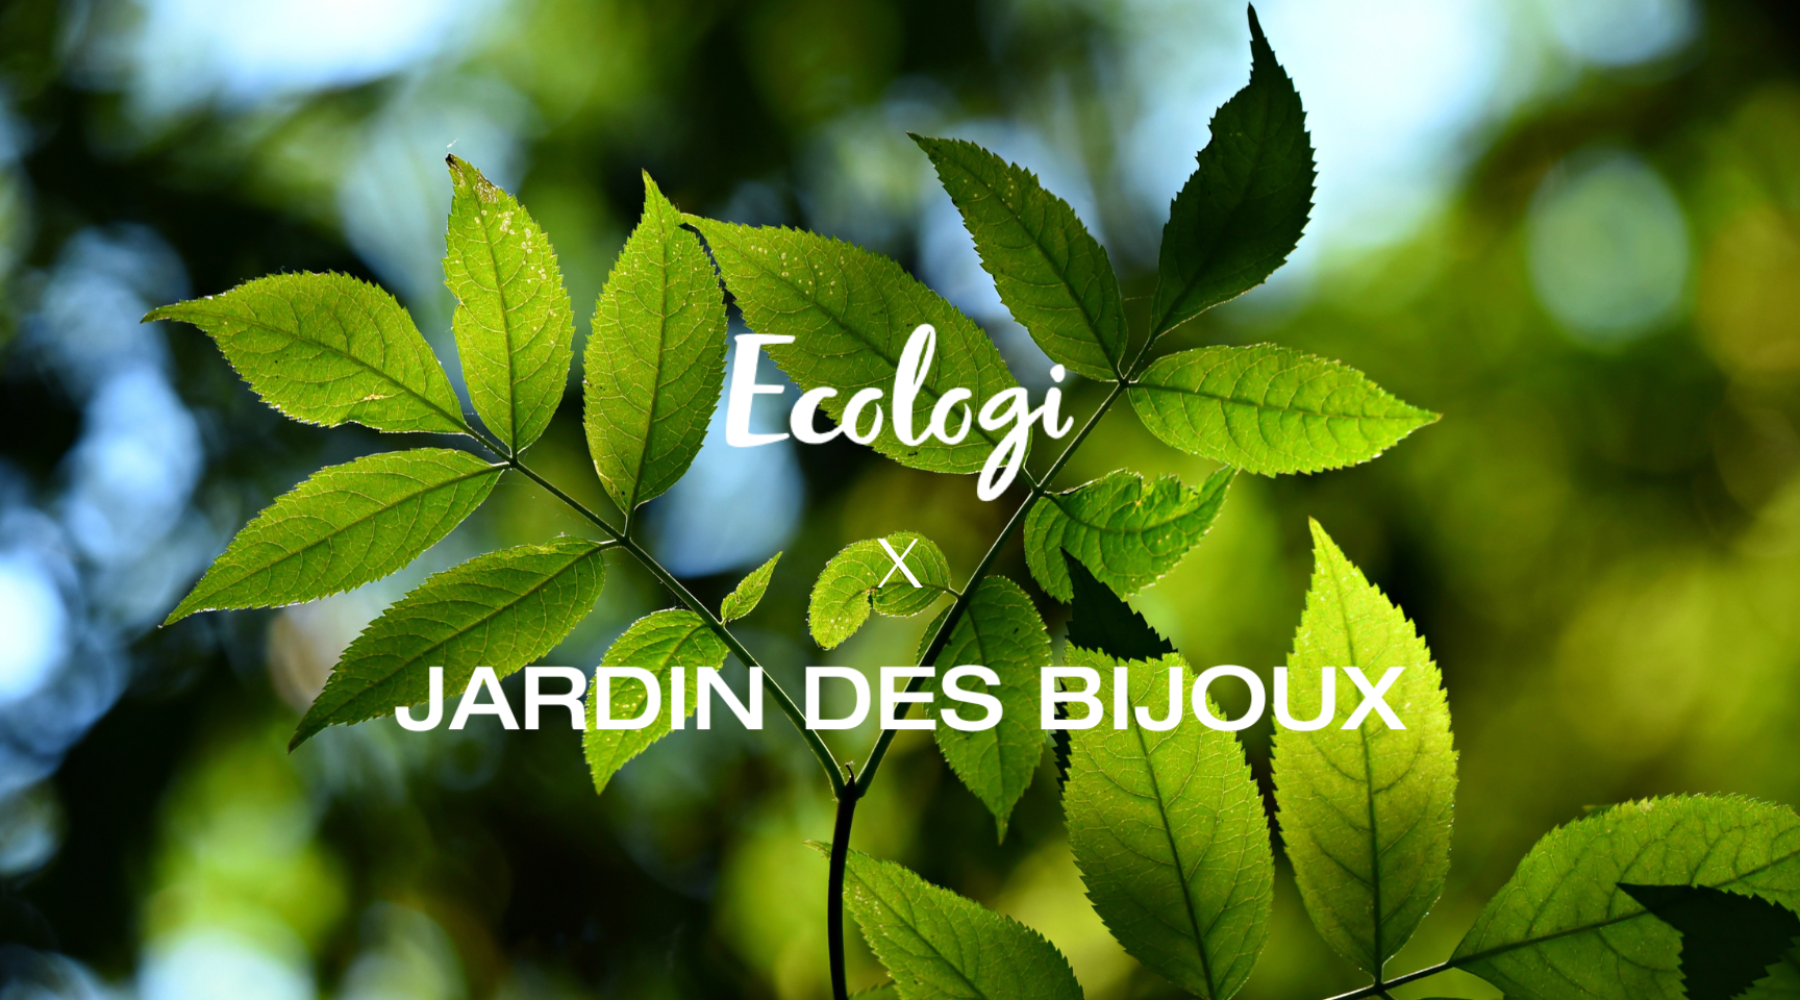 Jardin des Bijoux écologi 1 commande = 1 arbre planté